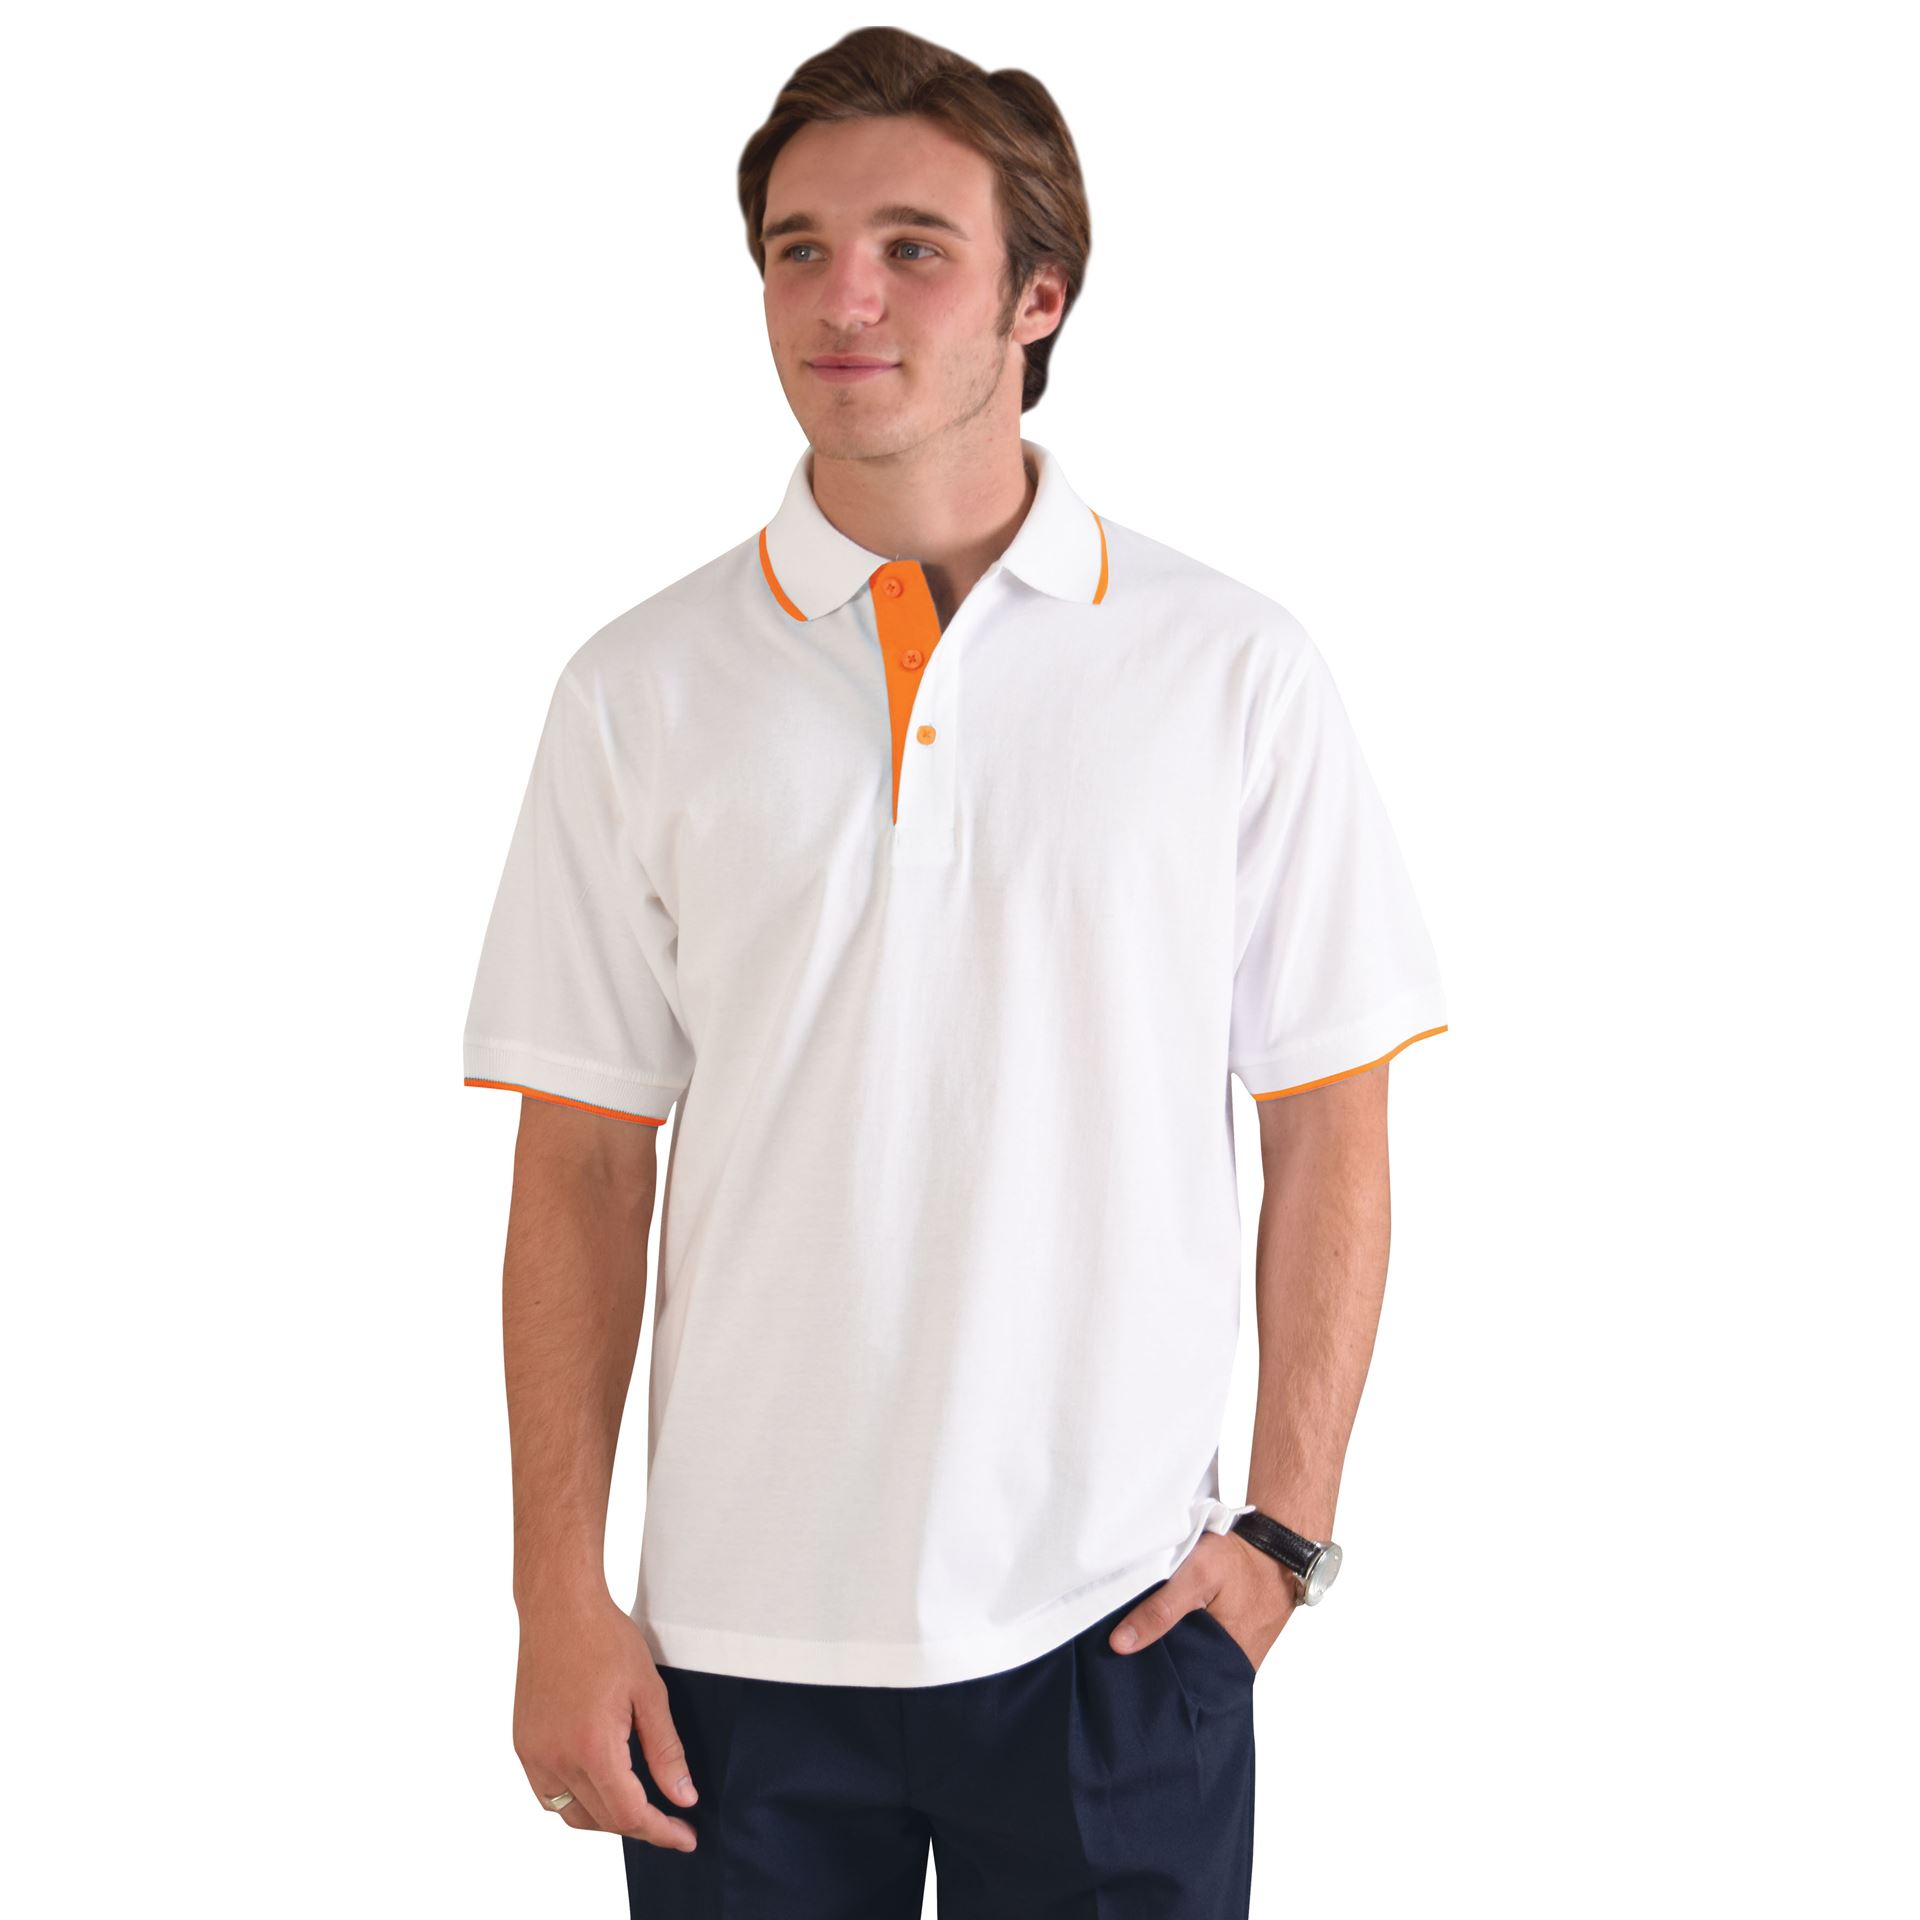 Trendy Polo - Avail in: White/Orange